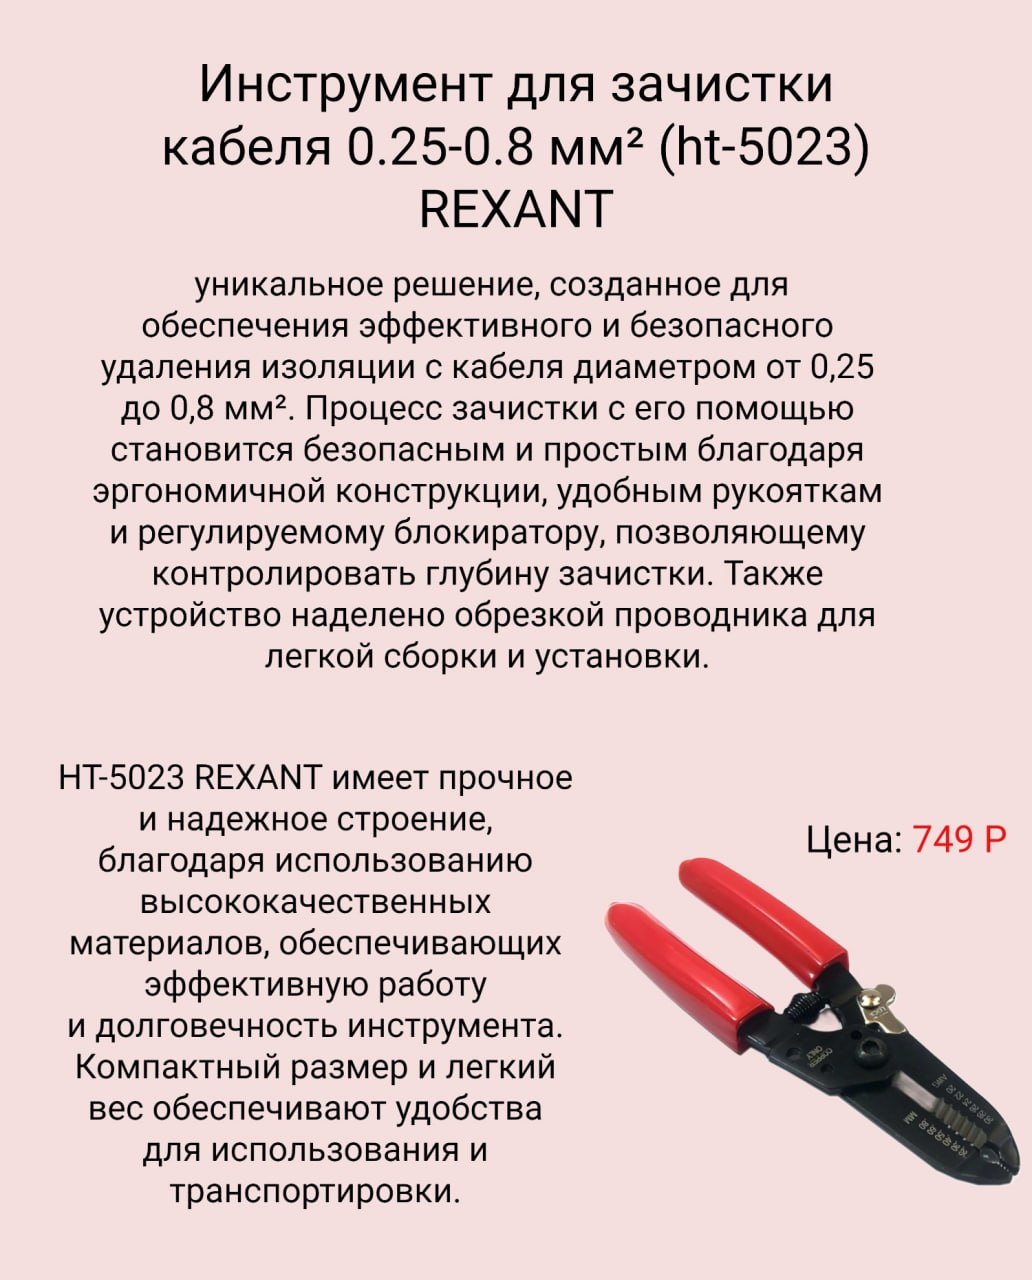 Купить Инструмент для зачистки кабеля 0.25-0.8 мм² (ht-5023) REXANT в Челябинске